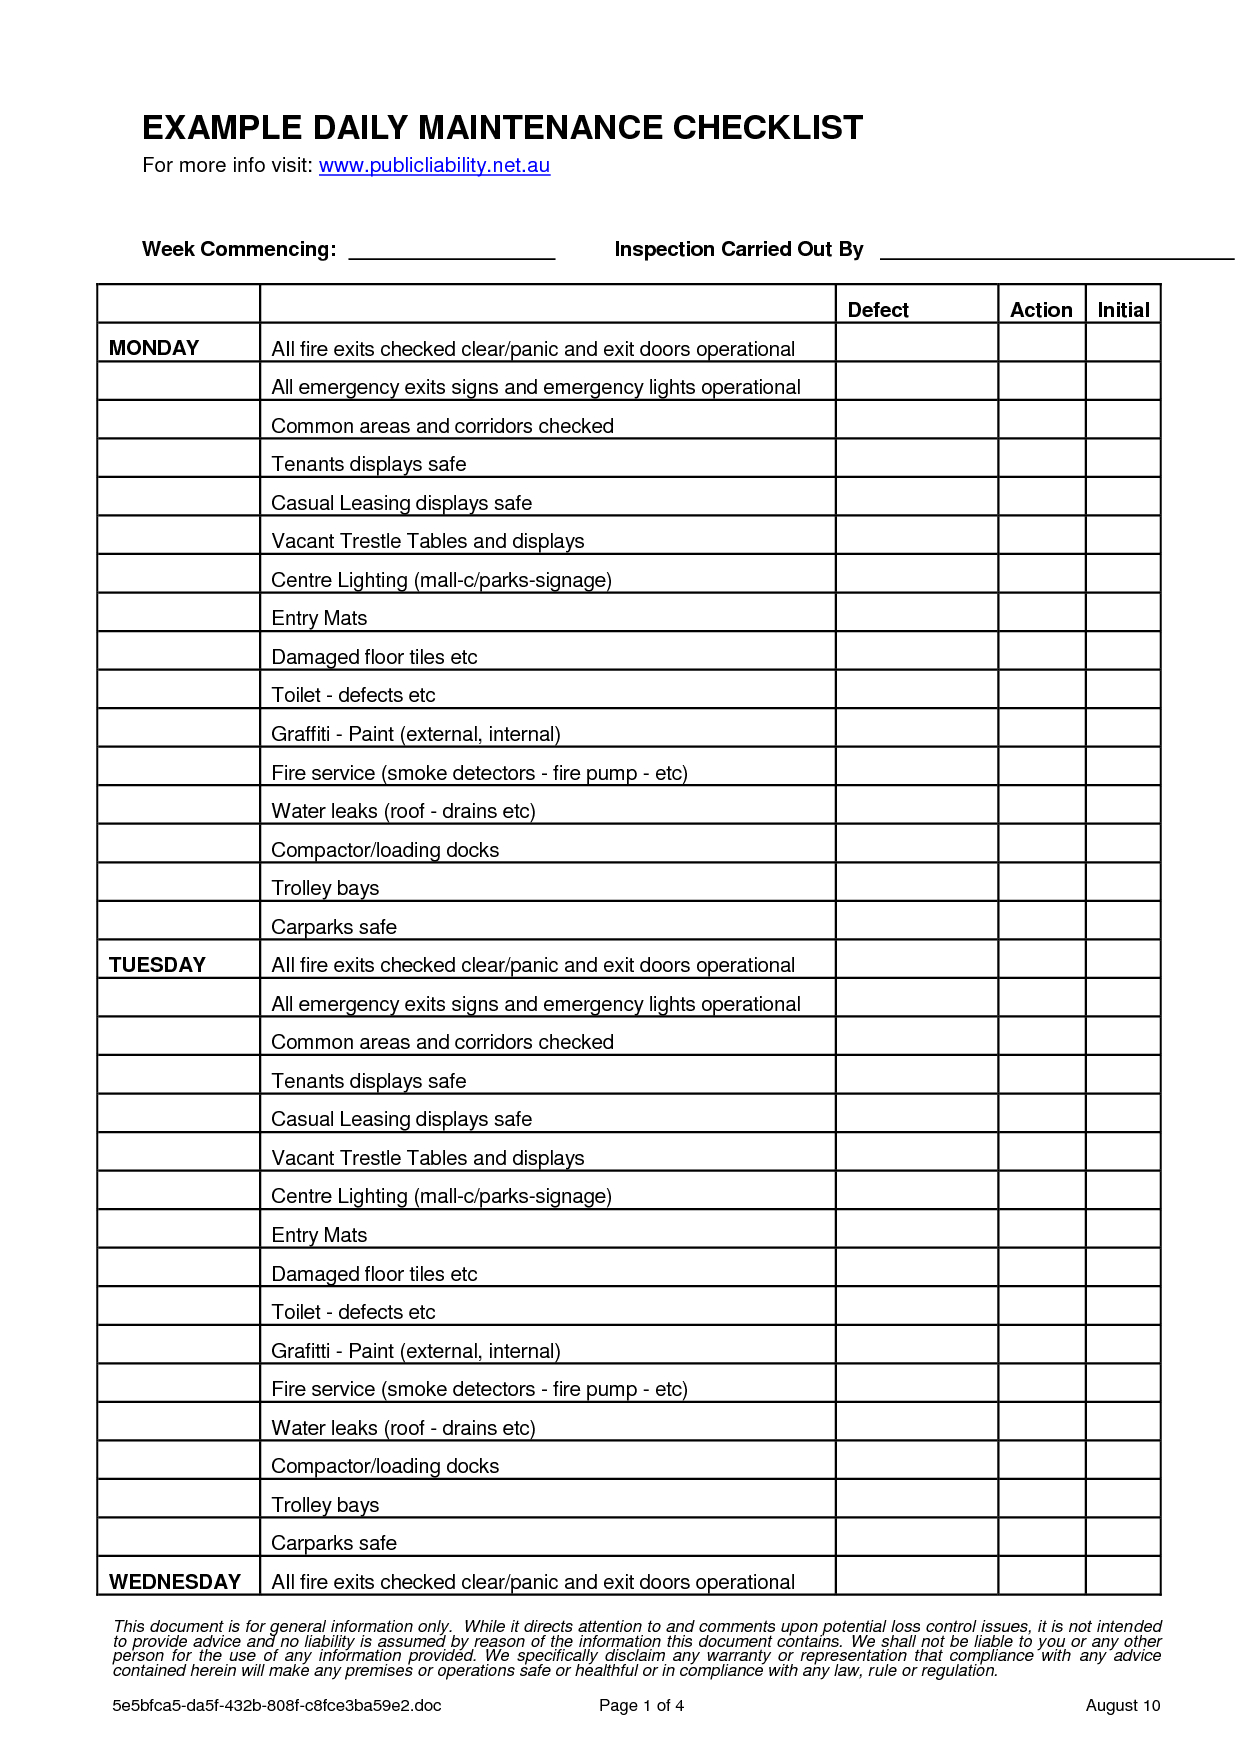 Preventive maintenance checklist pdf 💪 Inside Hotel Maintenance Checklist Template Throughout Hotel Maintenance Checklist Template